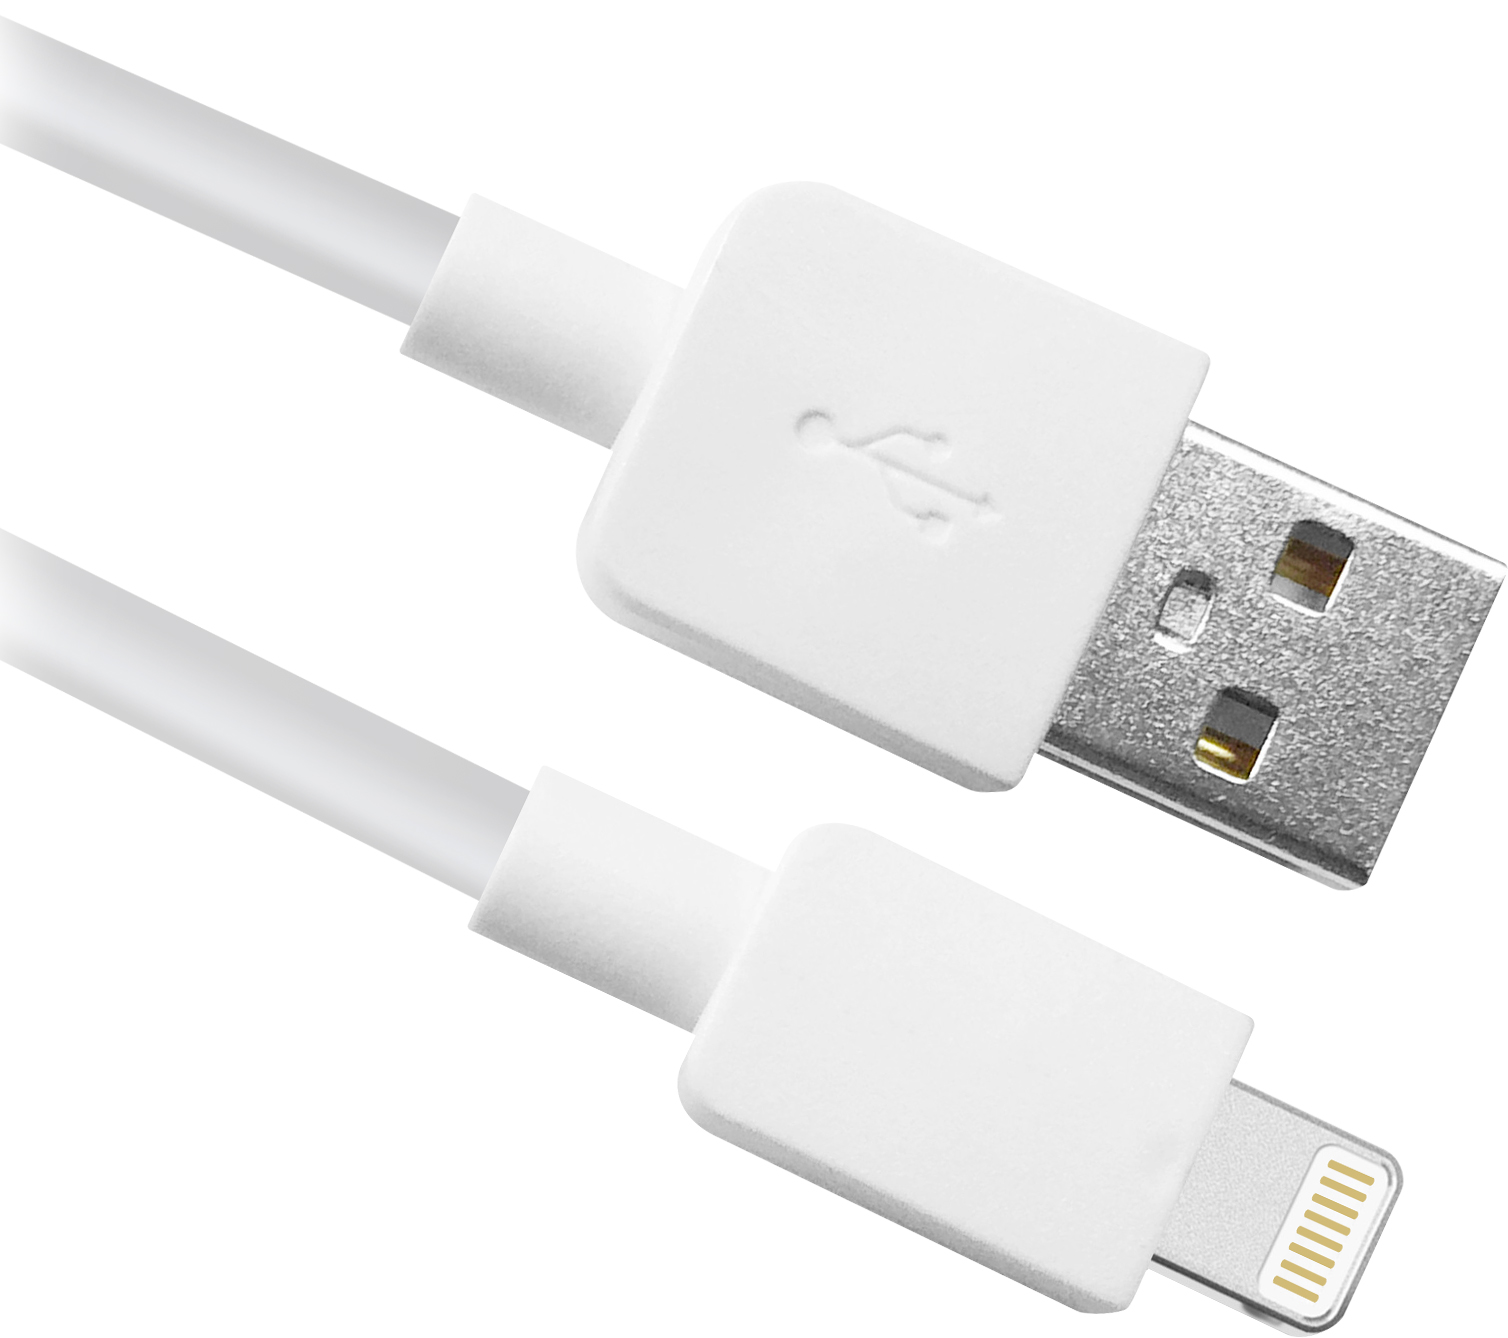 USB кабель Defender ACH02-01L AM-Lightning